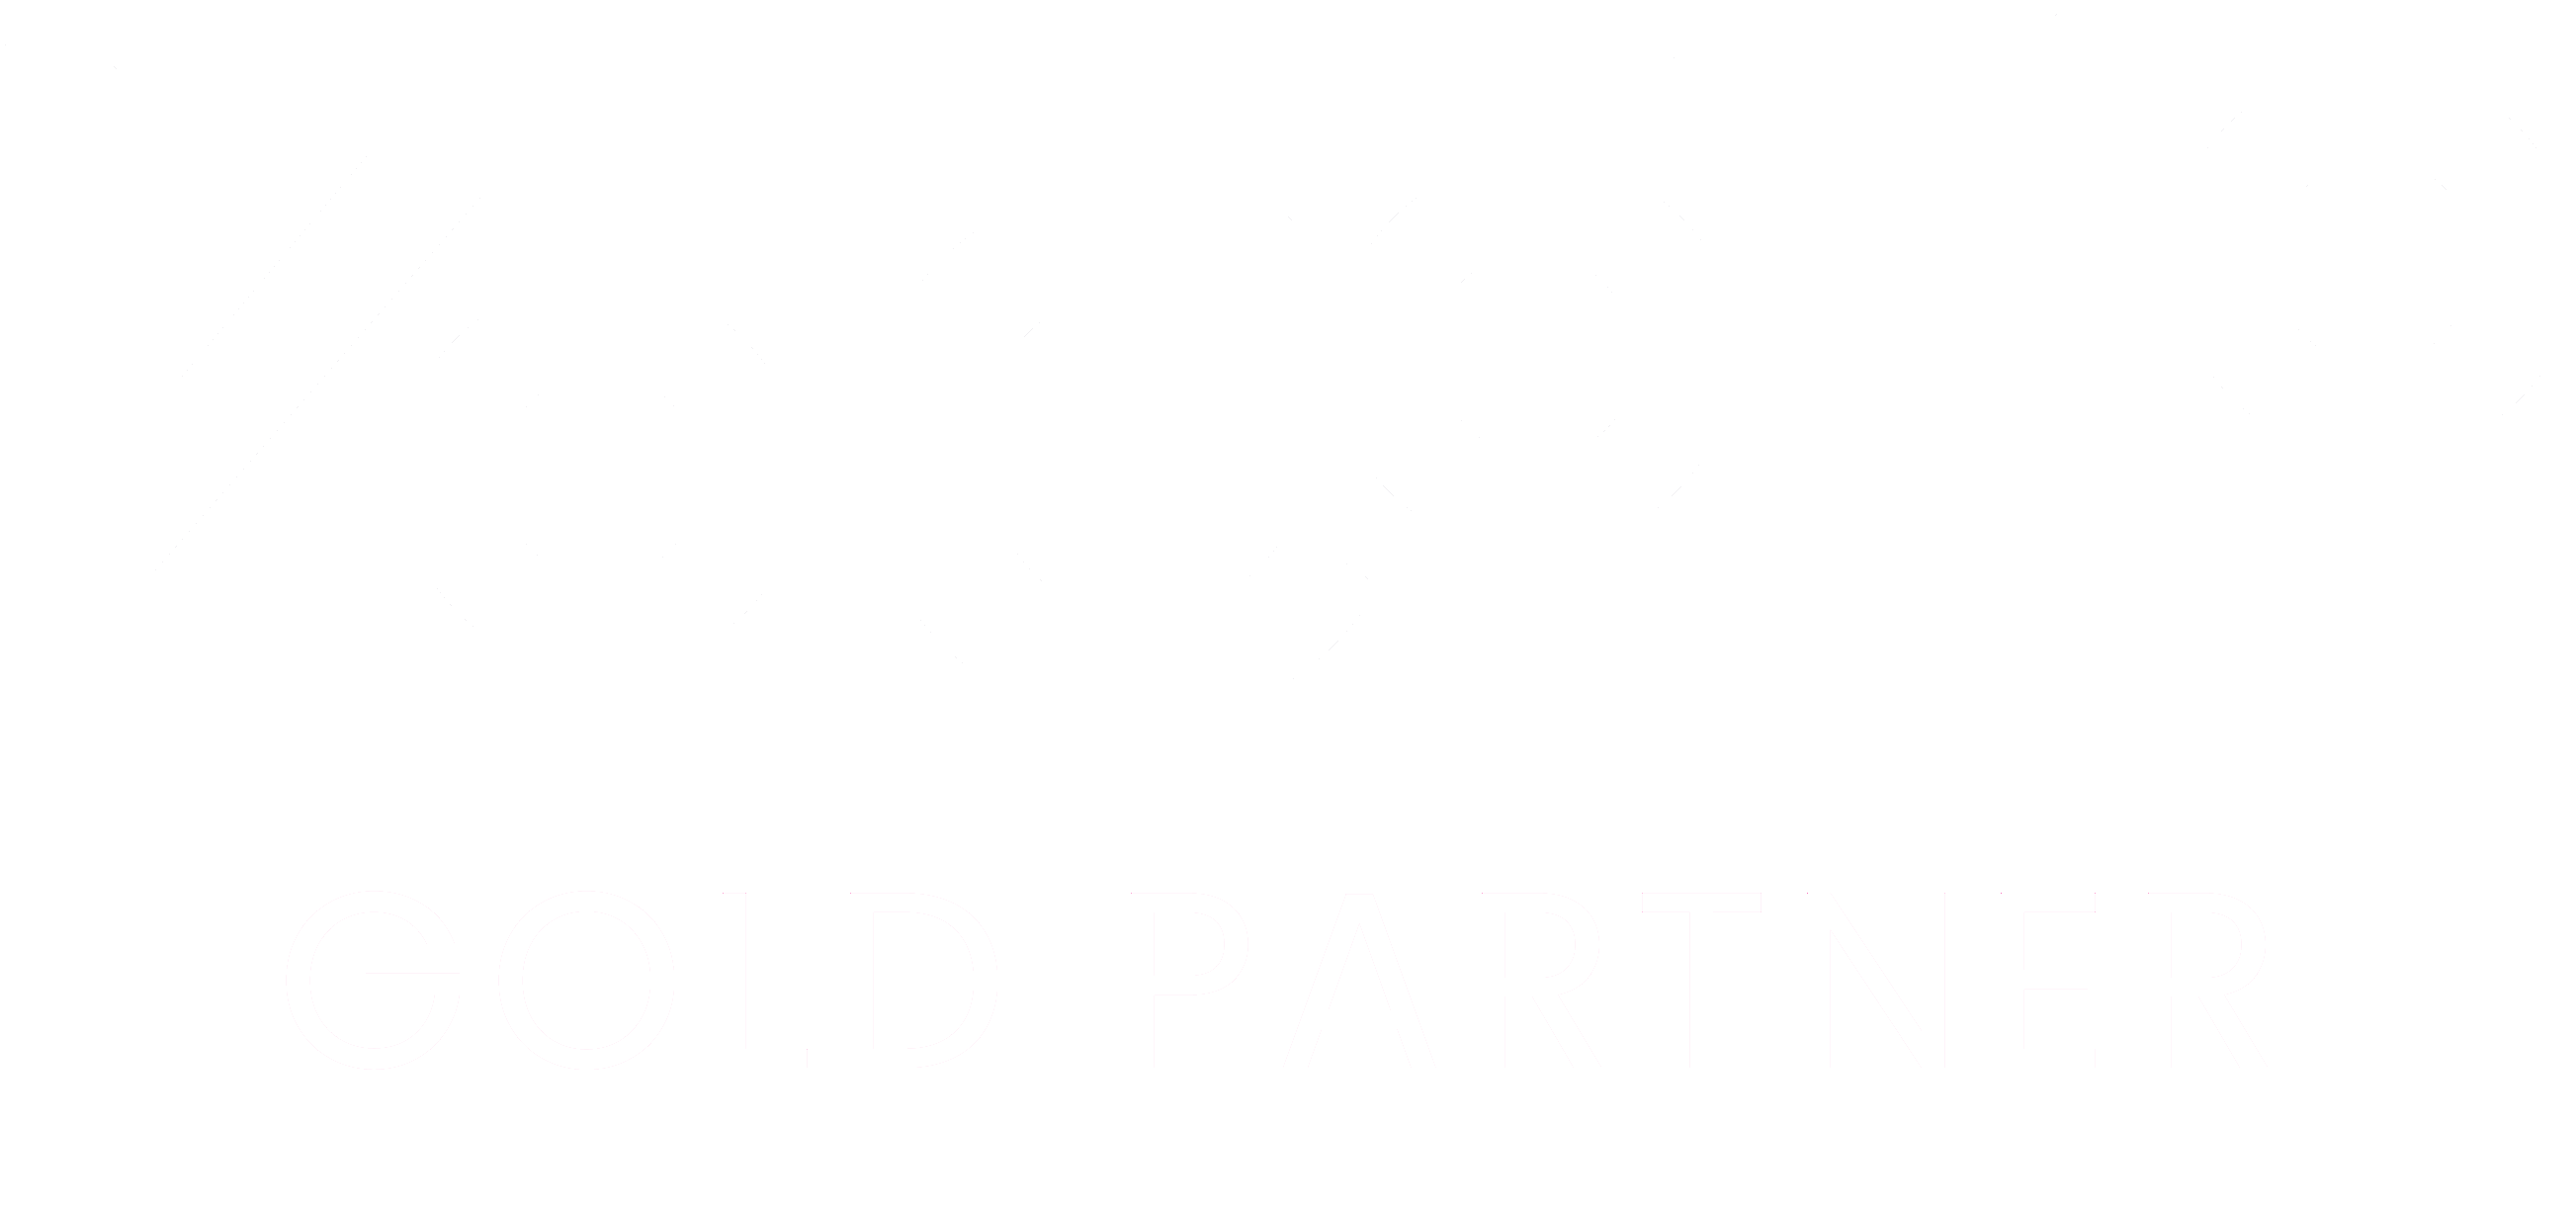 VoCoVo GOLD partner white